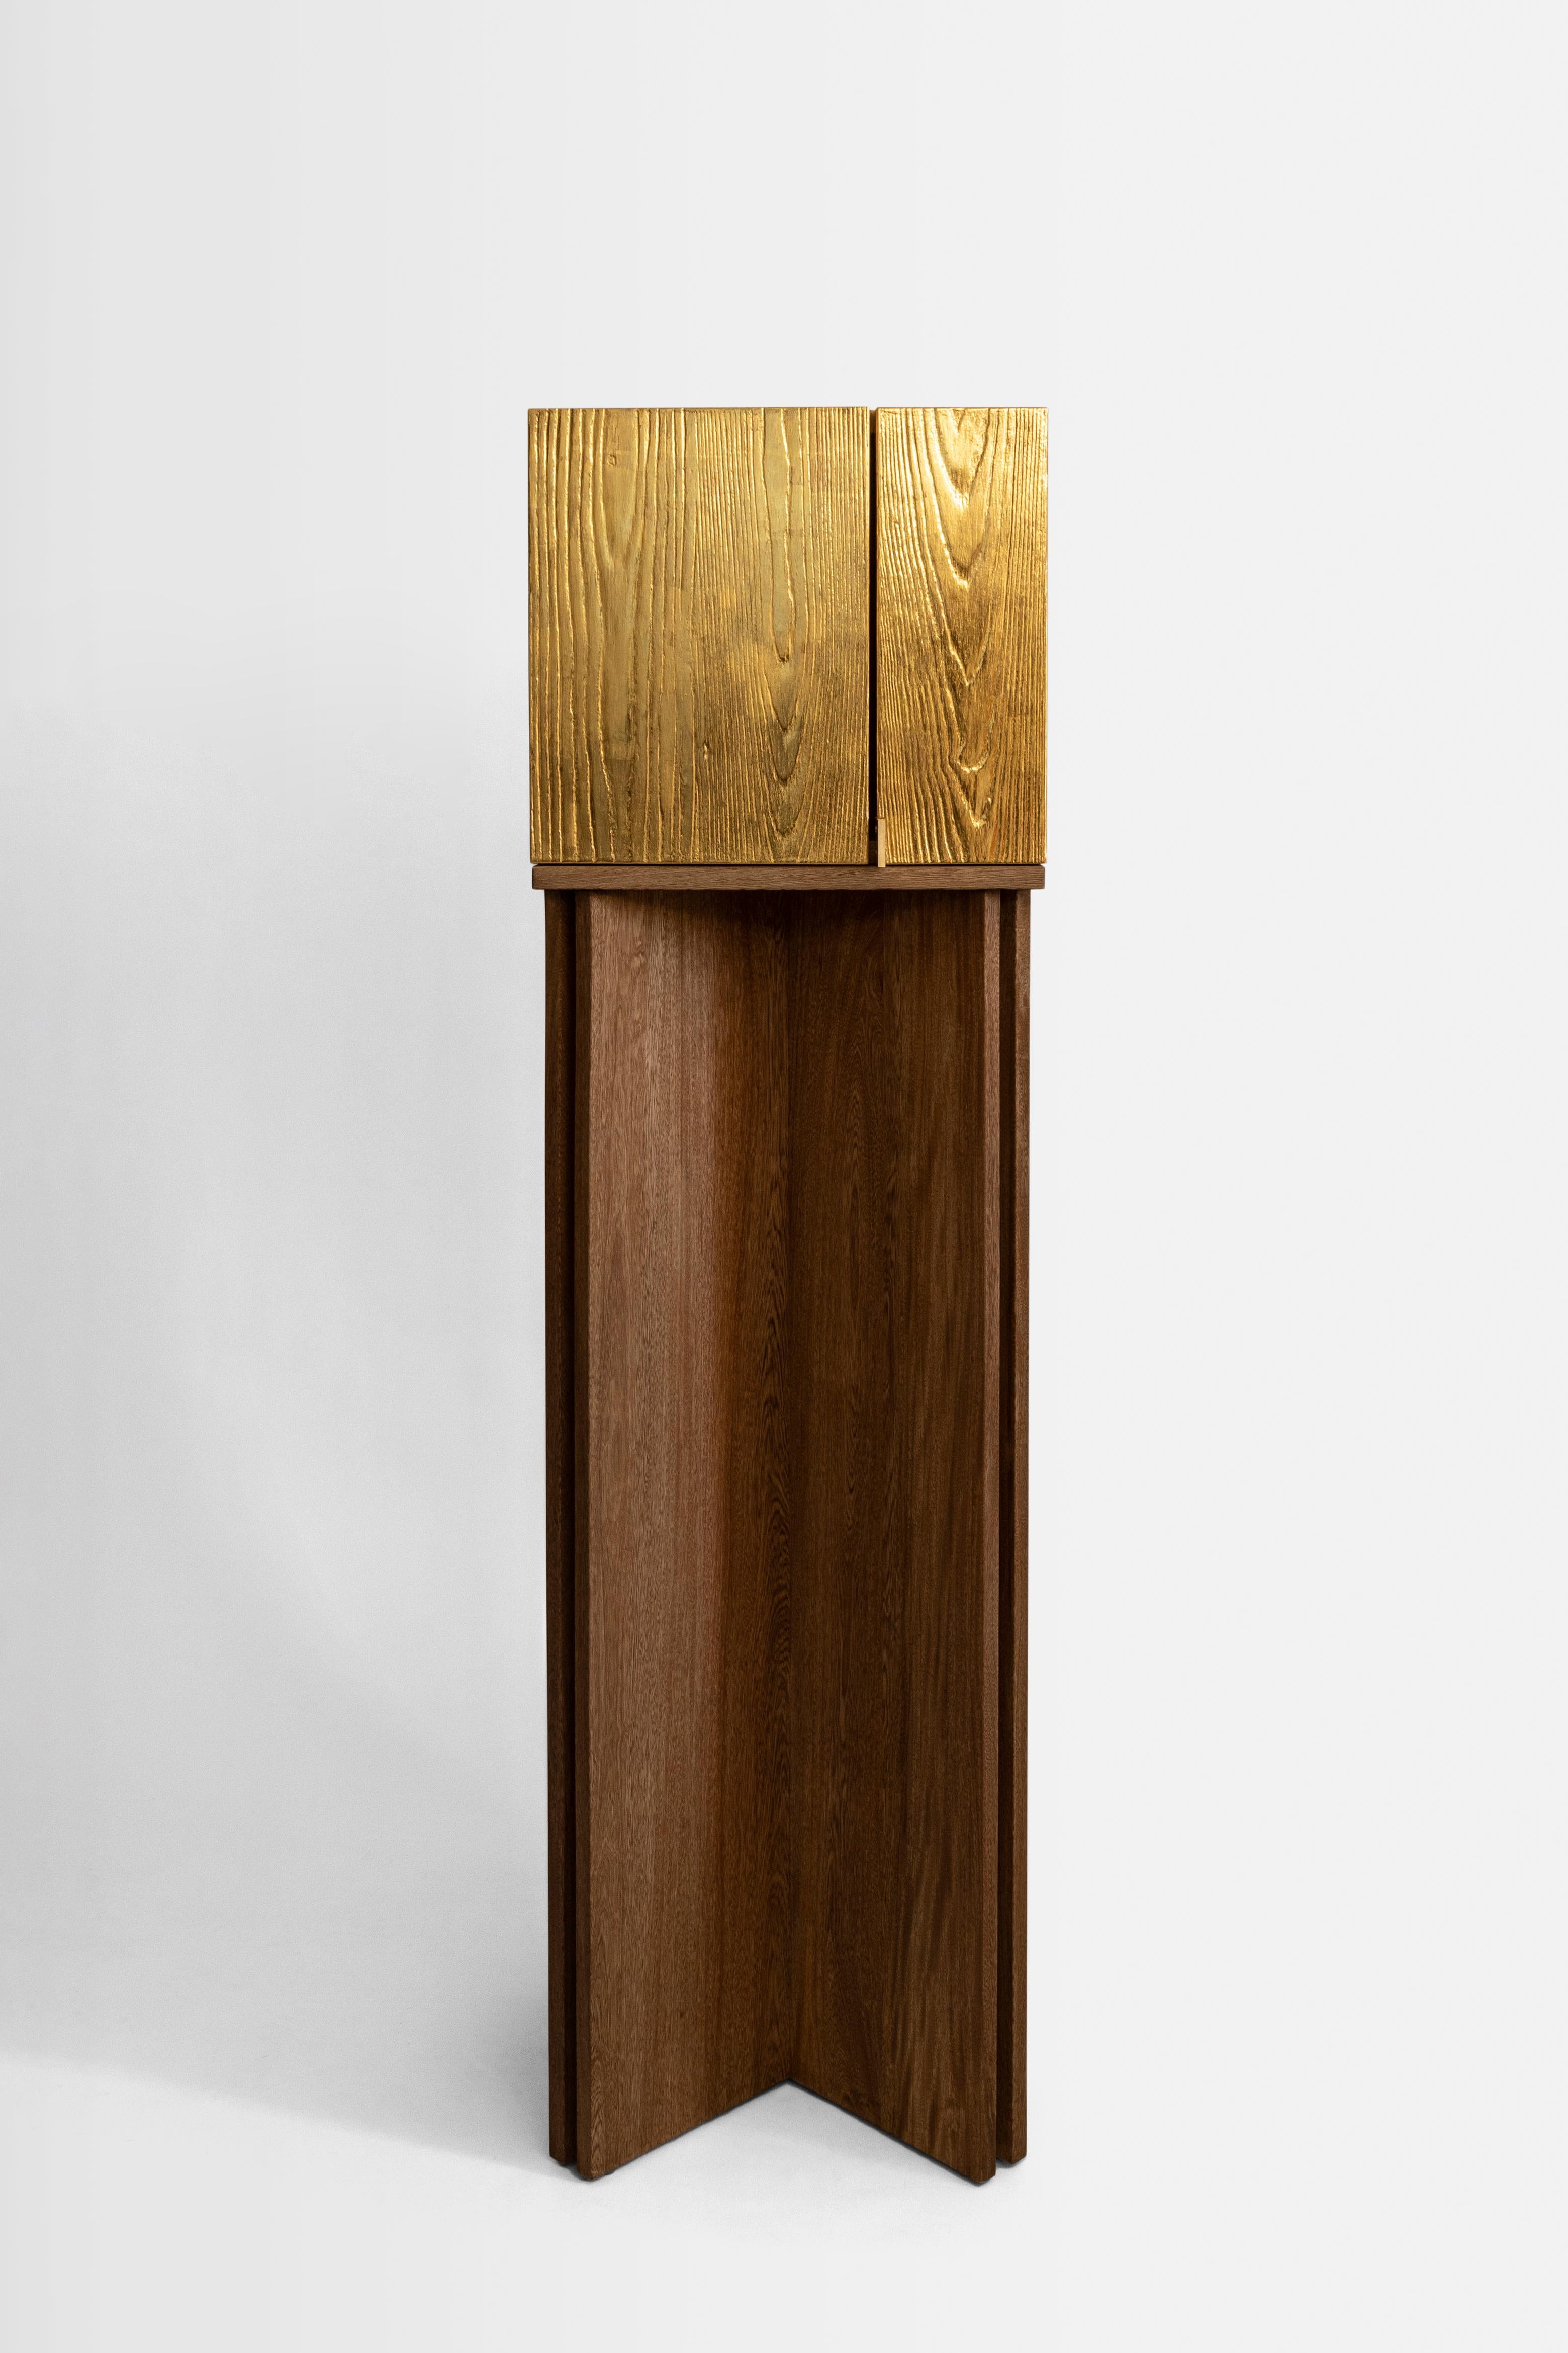 Die Architekten Karla Vázquez von KV und Caterina Moretti von Peca haben gemeinsam die Aurum Cabinets geschaffen, skulpturale Werke und Unikate, die einen ehrlichen Dialog über die uns am nächsten stehenden Gegenstände eröffnen sollen.

Jedes Stück